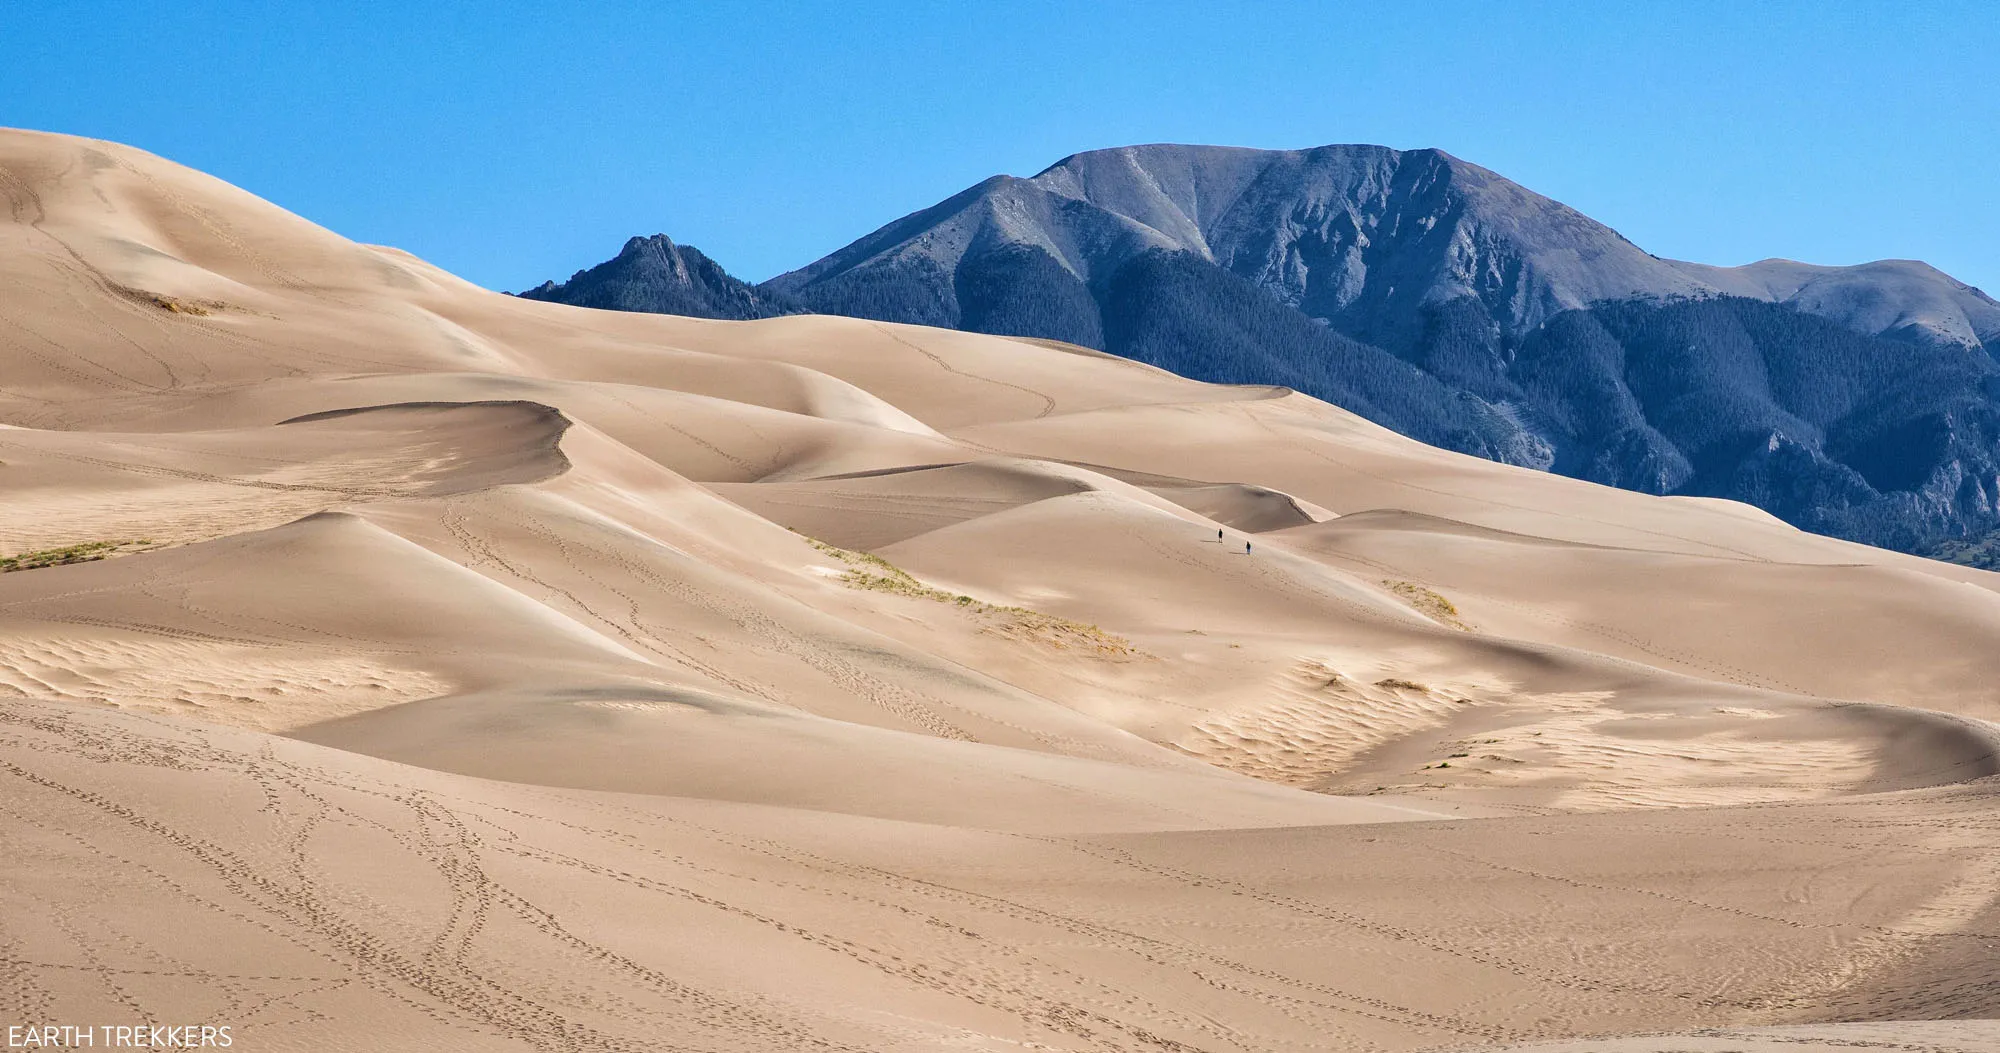 https://www.earthtrekkers.com/wp-content/uploads/2021/03/Great-Sand-Dunes-1.jpg.webp